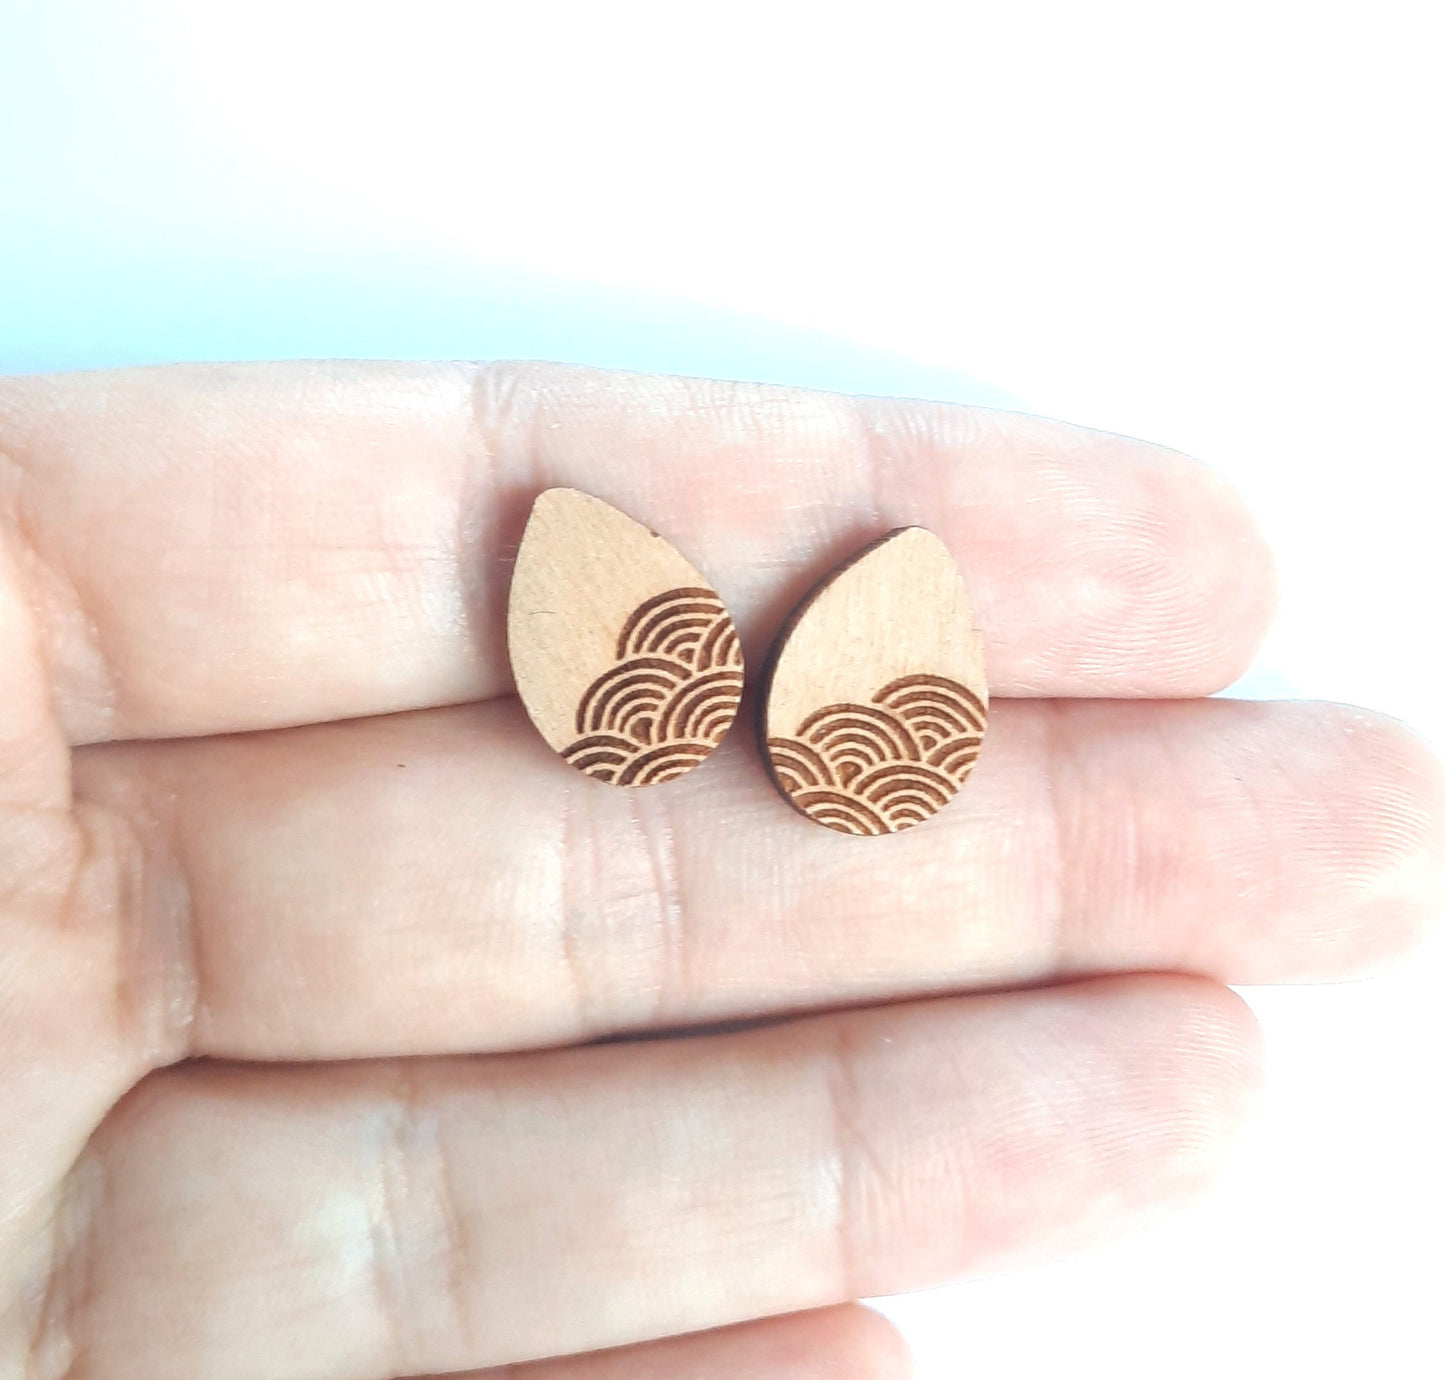 Ohrstecker Tropfen mit geometrischem Muster Kreise Wellen retro Holz Ohrringe